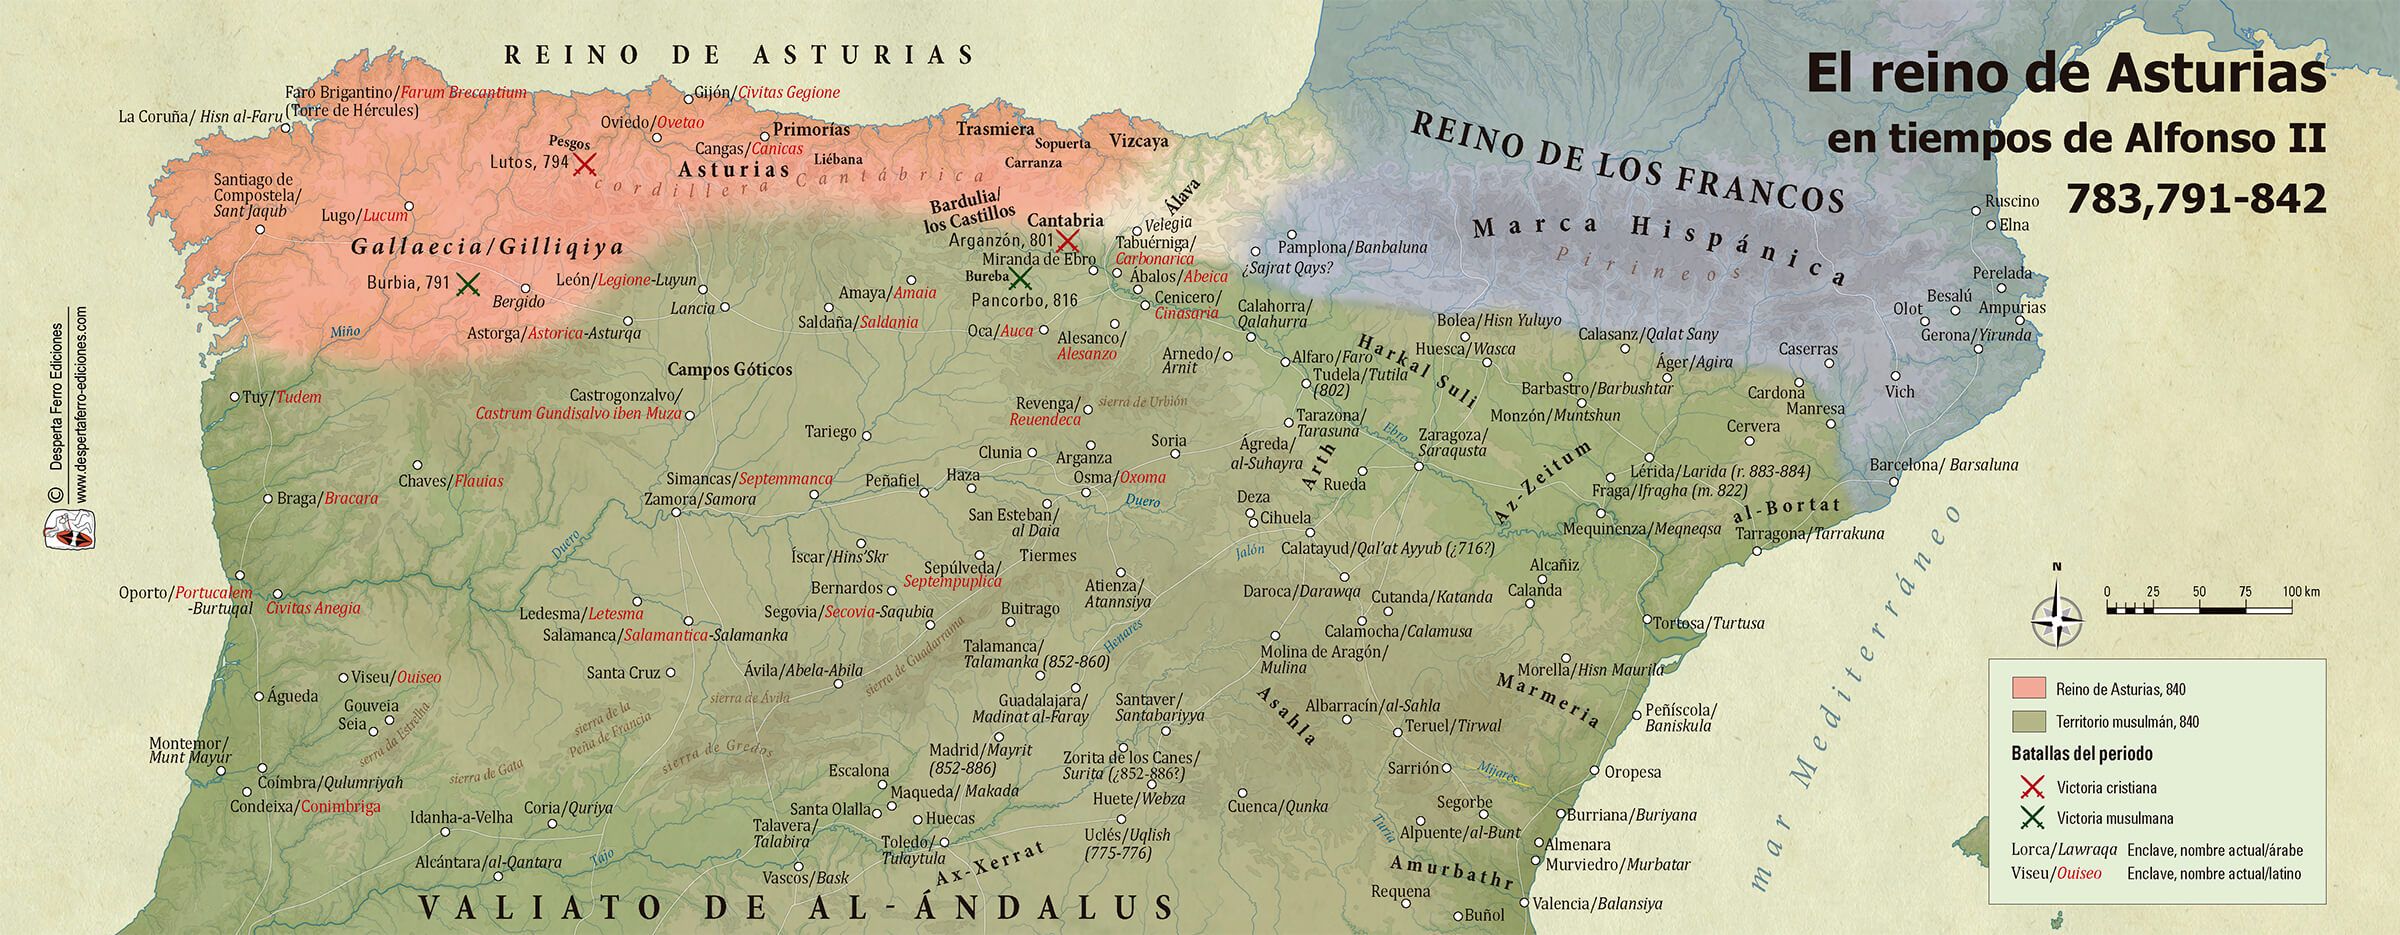 Mapa del reino de Asturias en tiempos de Alfonso II